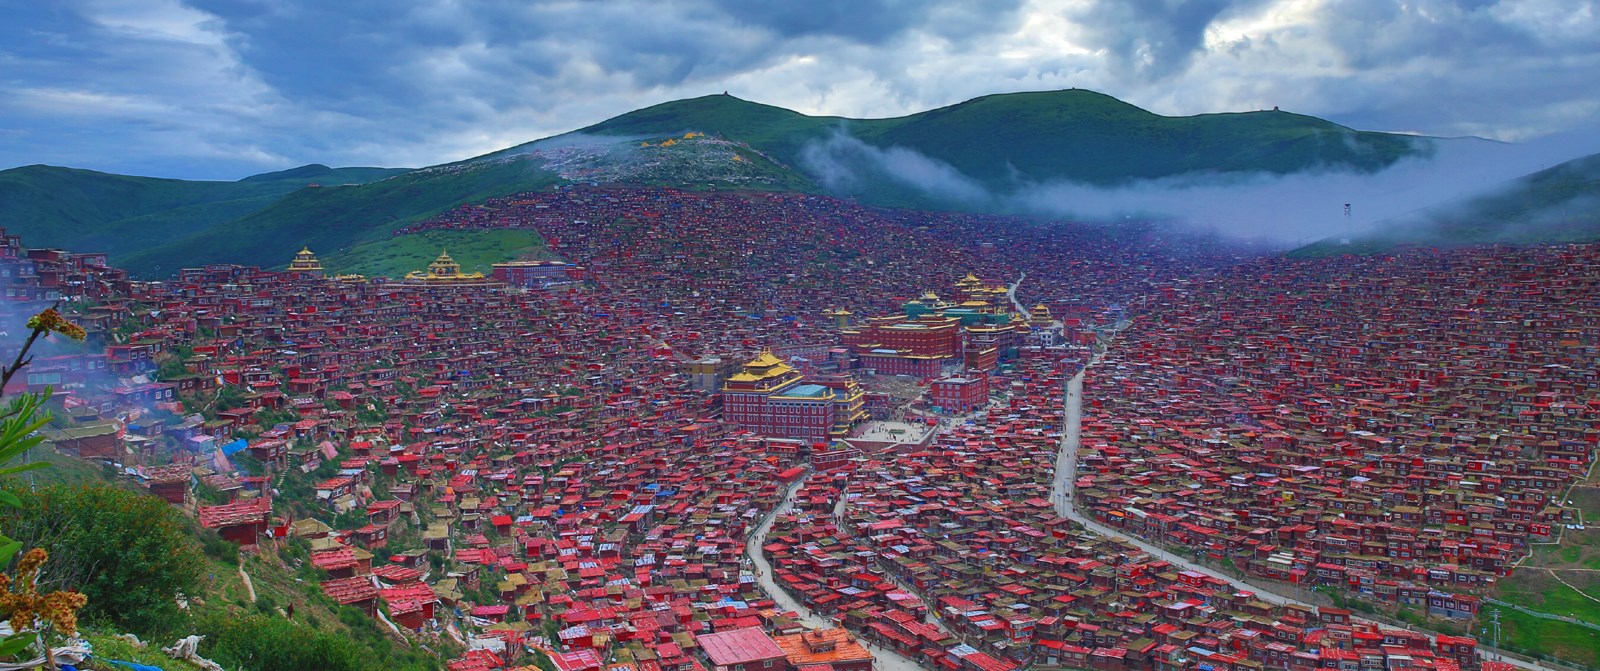 Voyage en voiture chinoise louée aux Kham et Amdo, Tibet est